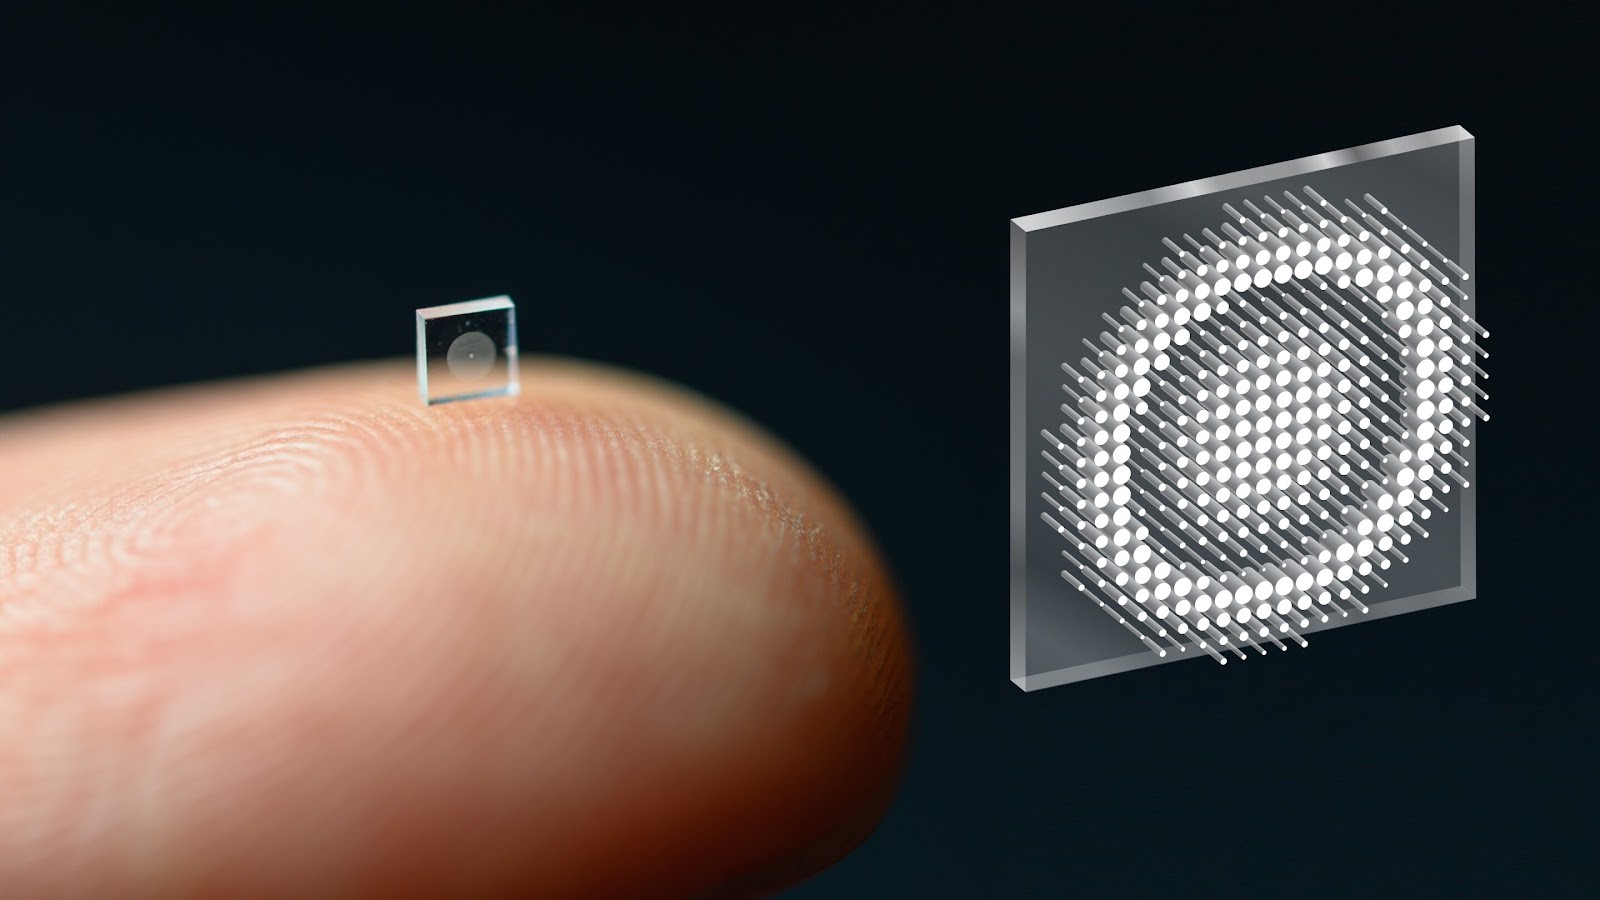 Các nhà nghiên cứu tại Đại học Princeton và Đại học Washington đã phát triển một máy ảnh siêu nhỏ có kích thước bằng một hạt muối. Chiếc máy ảnh được sử dụng công nghệ có tên là “siêu bề mặt” được gắn với 1,6 triệu cột trụ và có thể được sản xuất giống như một con chip máy tính. Ảnh: Đại học Princeton.